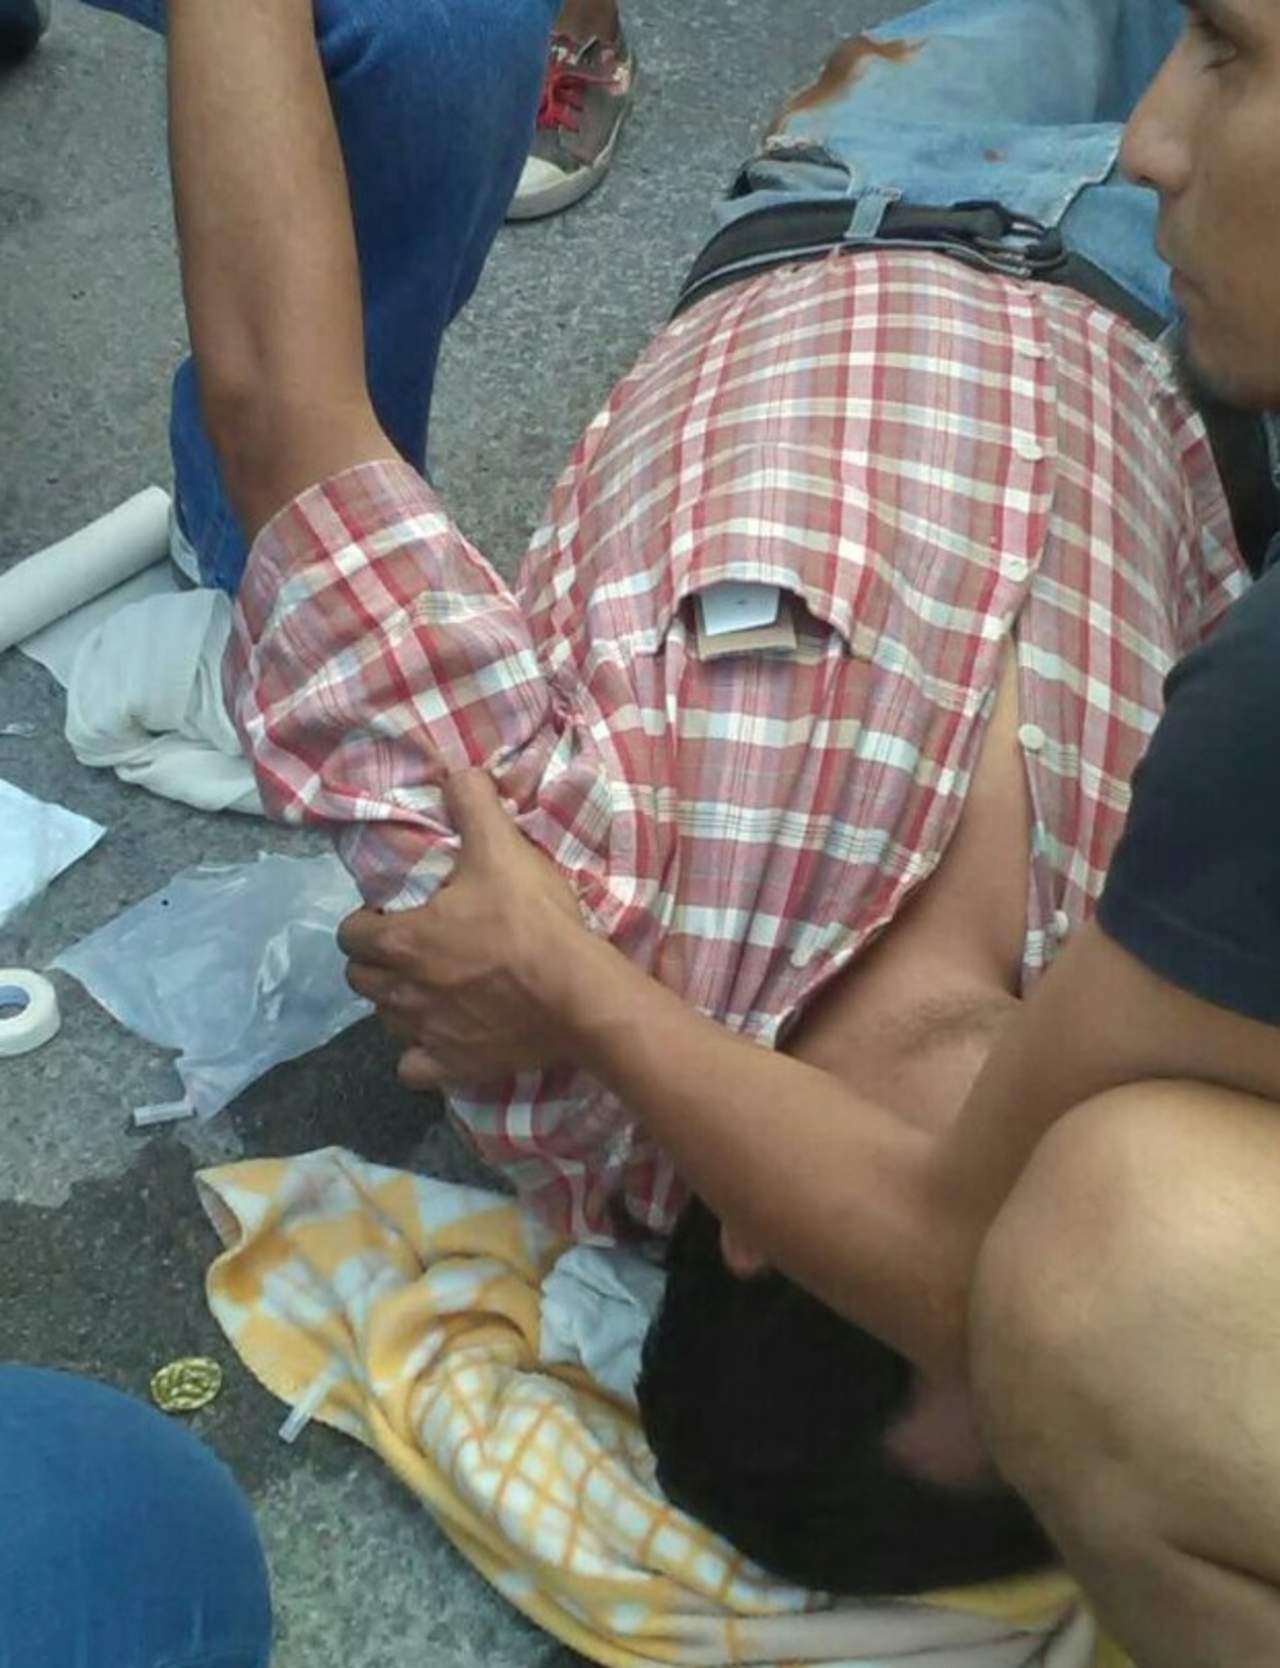 El lesionado esta identificado como Armando Ortíz Rodríguez, de 45 años de edad, con domicilio en Cerrada Miravalle del municipio de Gómez Palacio. (EL SIGLO DE TORREÓN)